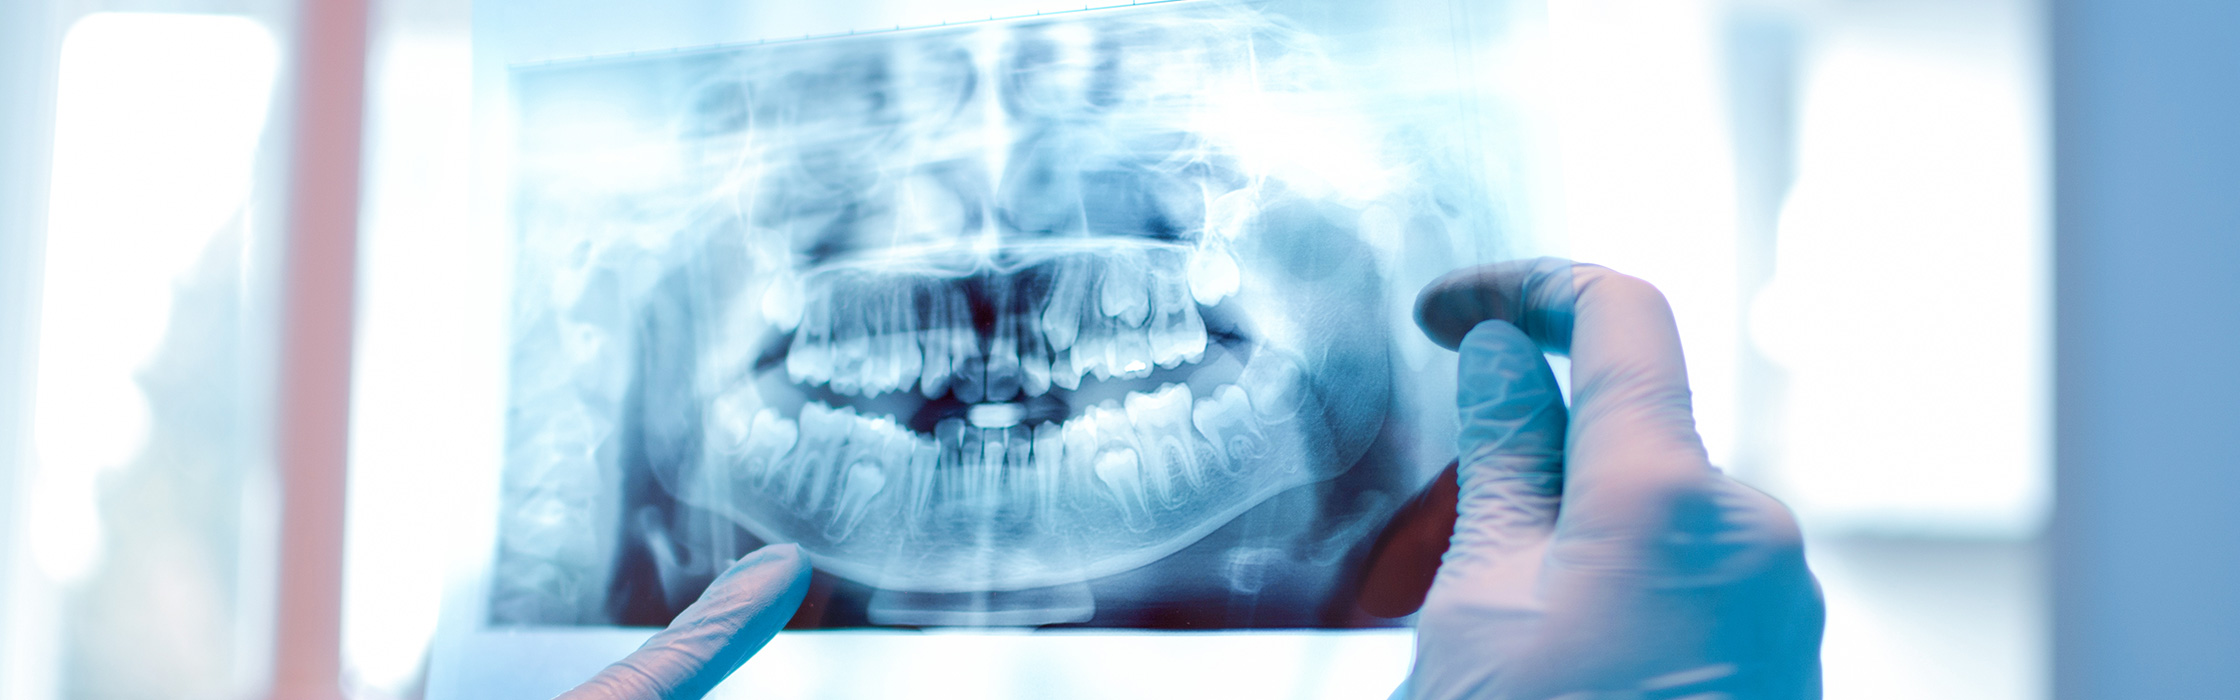 Zahnerhalt – gesunde natürliche Zähne bis ins hohe Alter